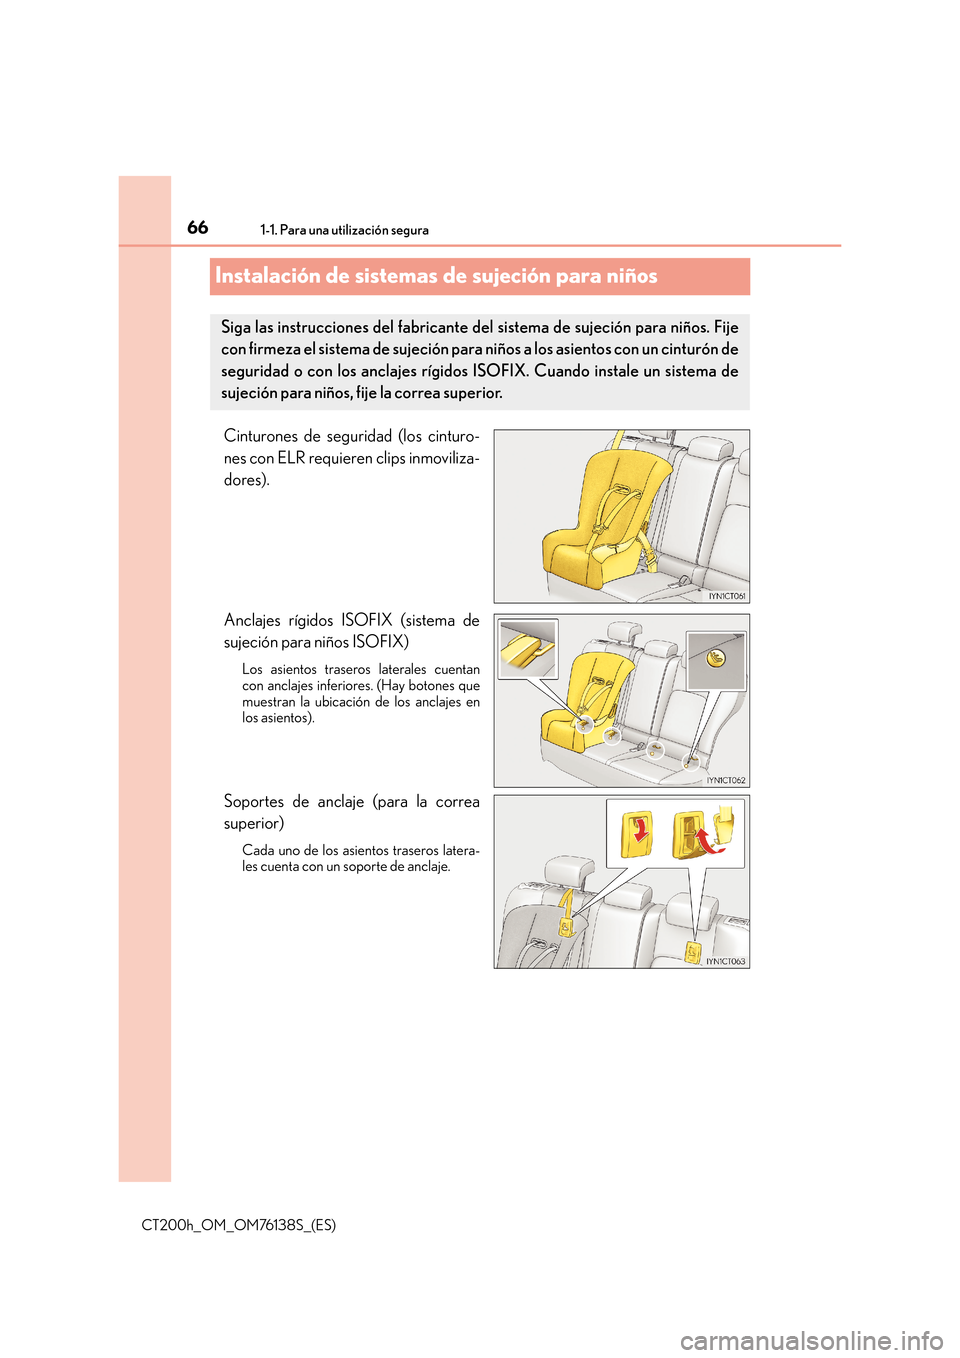 Lexus CT200h 2014  Manual del propietario (in Spanish) 661-1. Para una utilización segura
CT200h_OM_OM76138S_(ES)
Instalación de sistemas de sujeción para niños
Cinturones de seguridad (los cinturo-
nes con ELR requieren clips inmoviliza-
dores).
Ancl